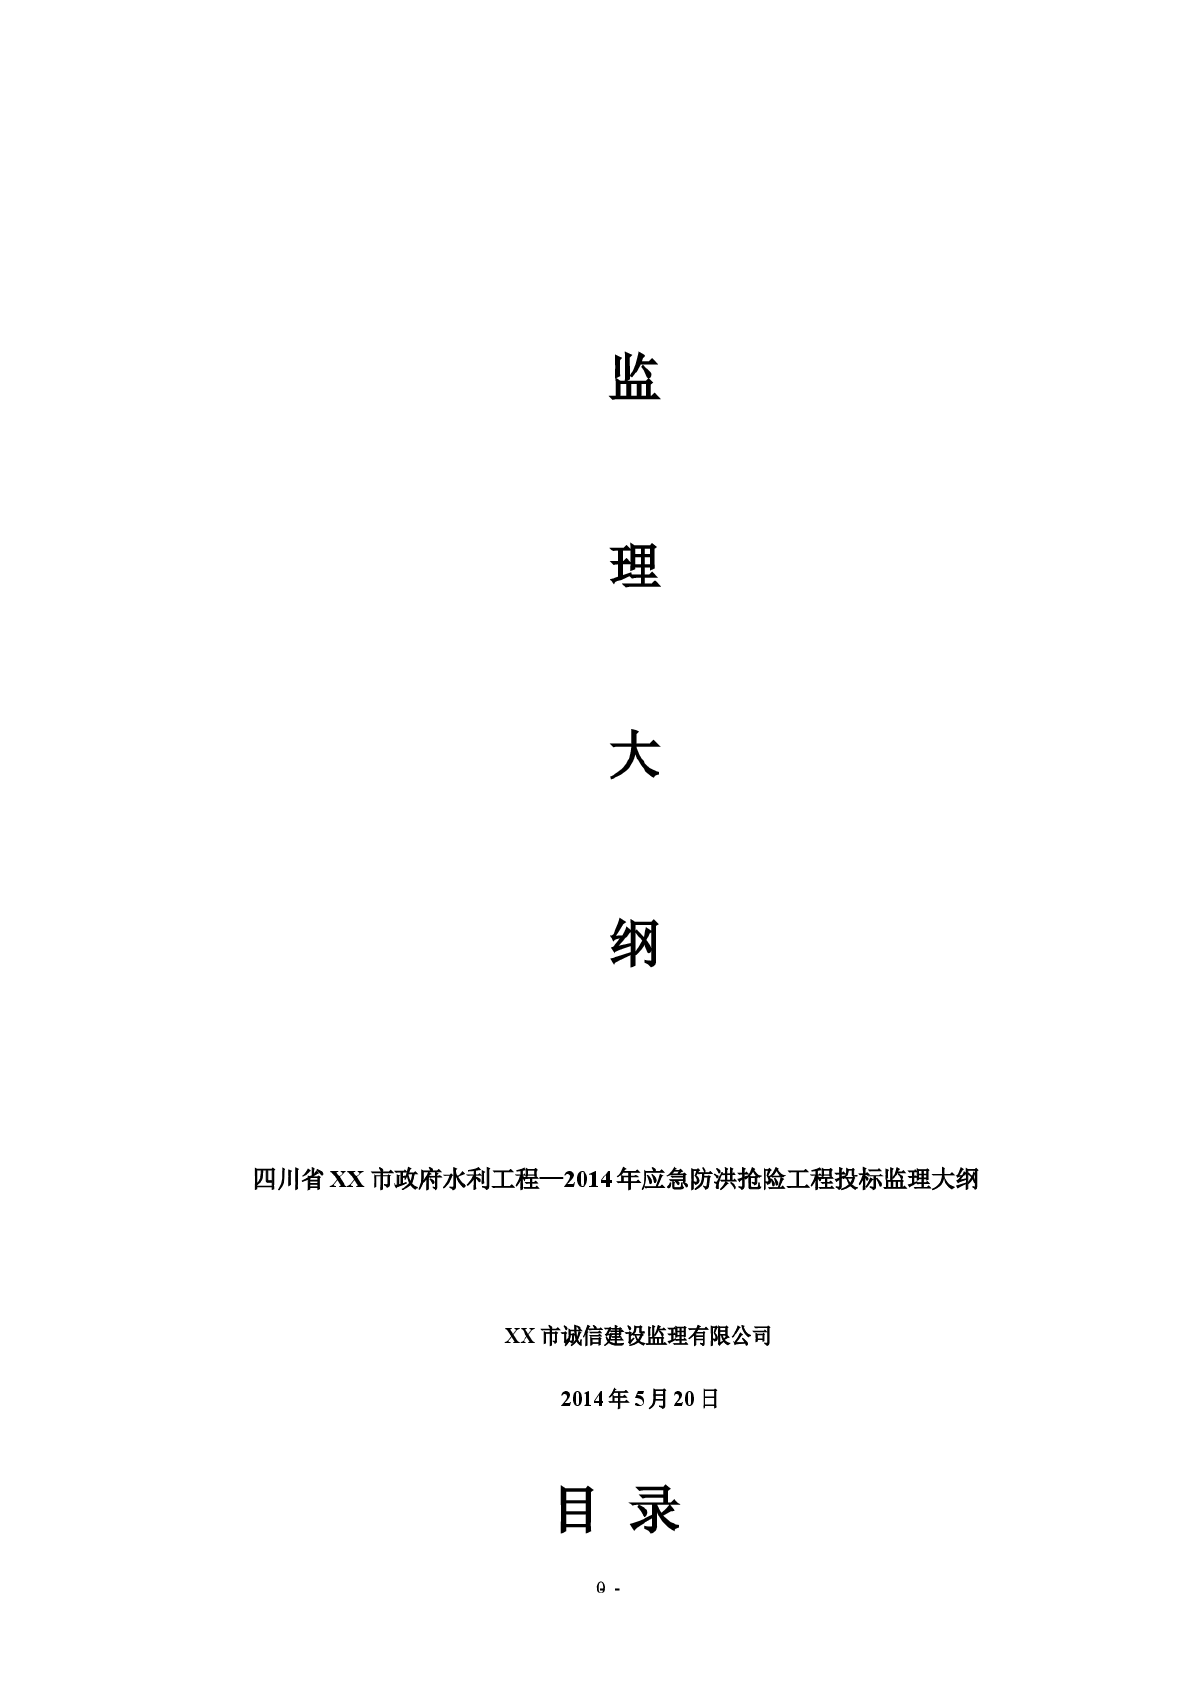 [四川]防洪抢险工程投标监理大纲（2014年编制）